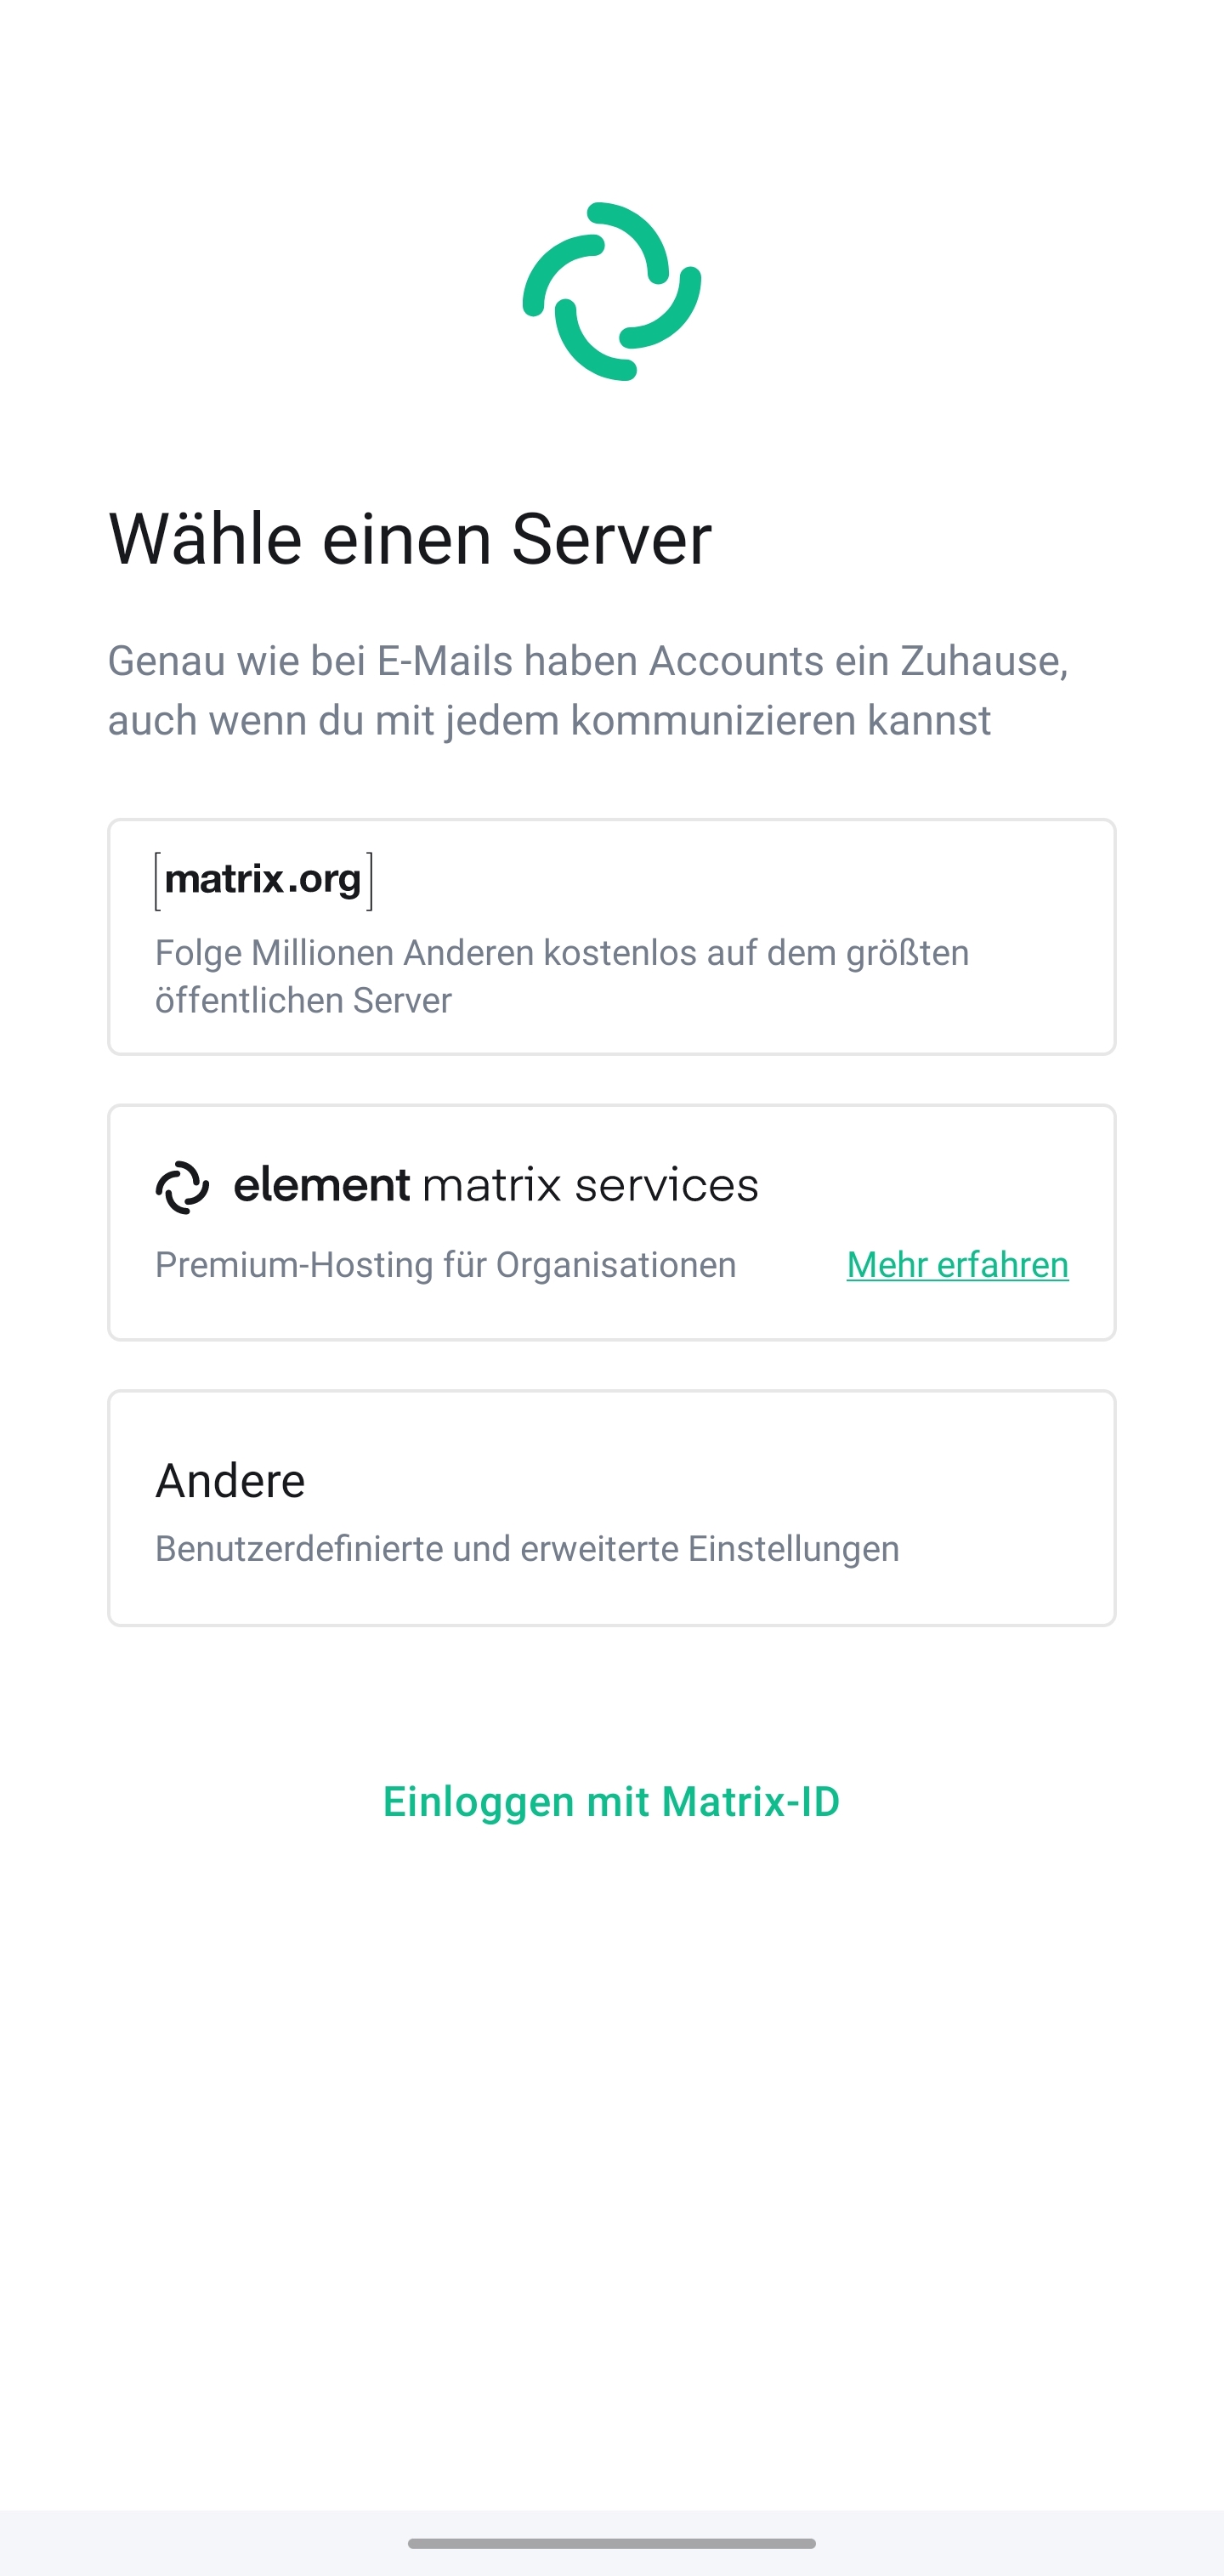 Auswahl eines Servers: Zu sehen sind die Optionen “matrix.org”, “element matrix services” und “Andere”